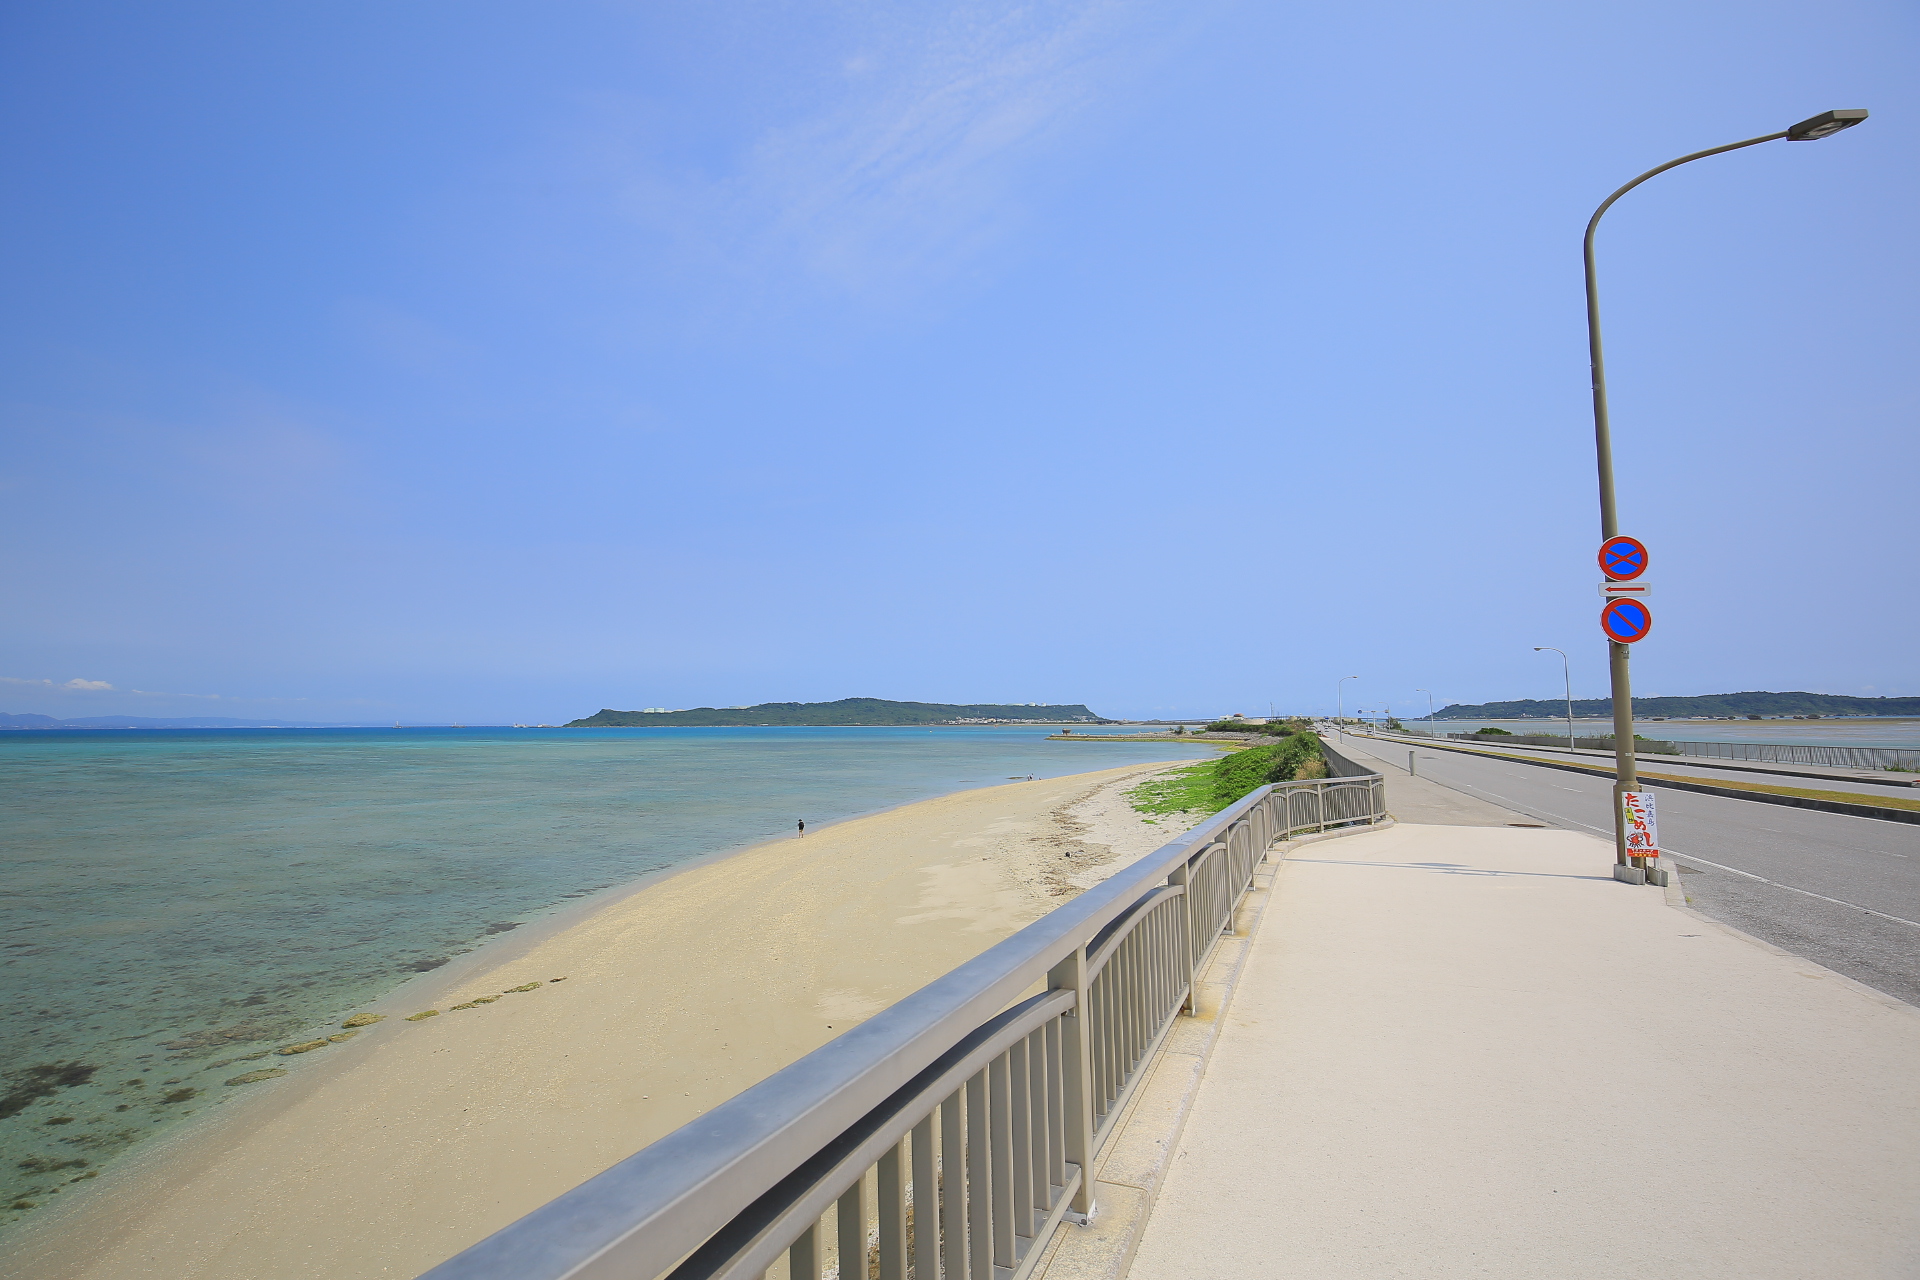 【沖繩自助旅行】沖繩自駕遊8天,景點美食住宿行程,玩遍北中南部 @小環妞 幸福足跡